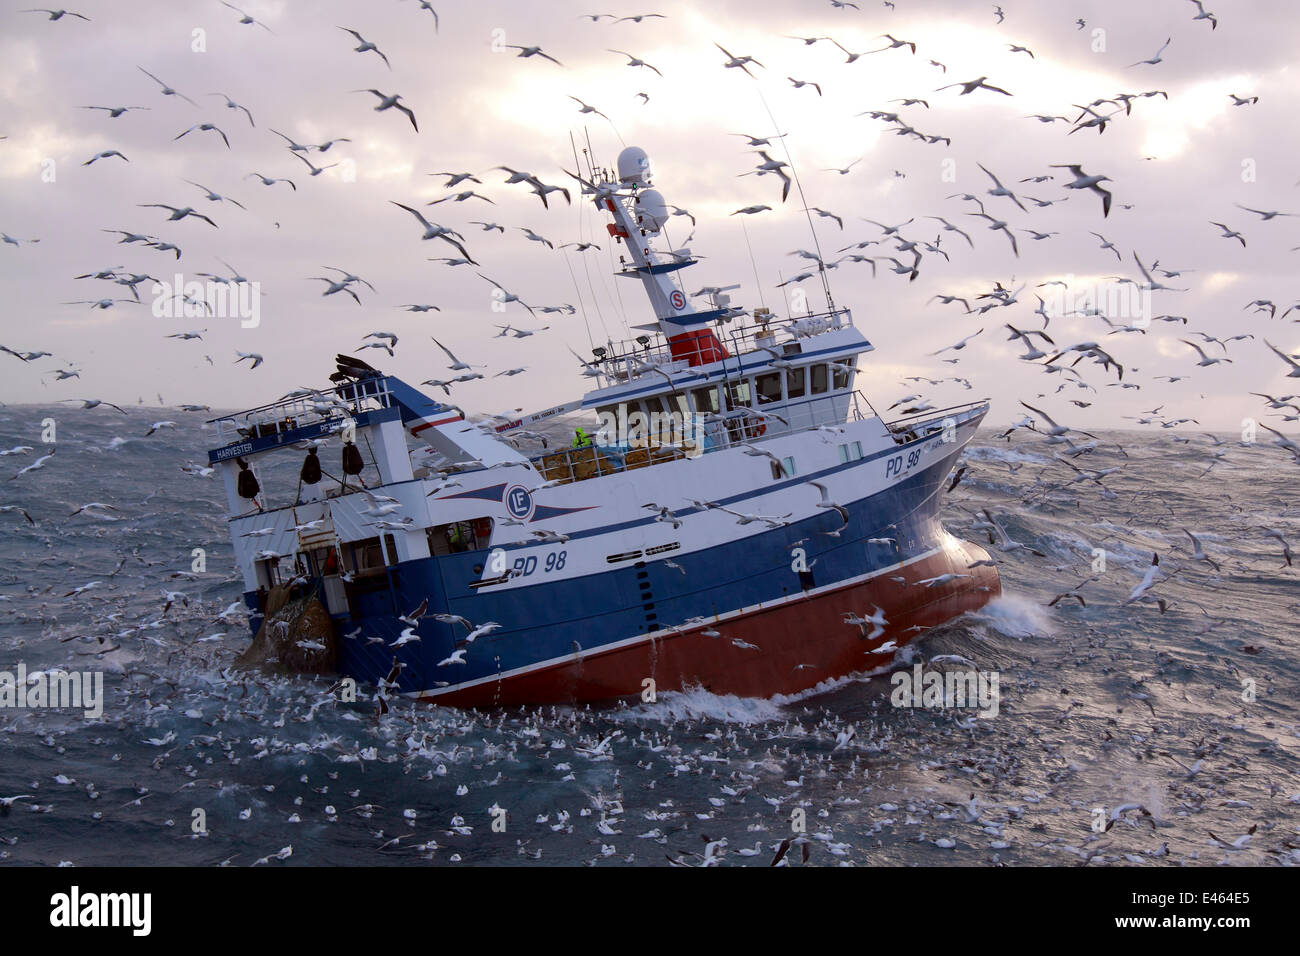 Fischereifahrzeug "Harvester" Windenbetrieb ihren Fang an Bord inmitten einer Gruppe von hungrigen Seevögel. Nordsee, Europa, Dezember 2011. Eigentum freigegeben. Stockfoto